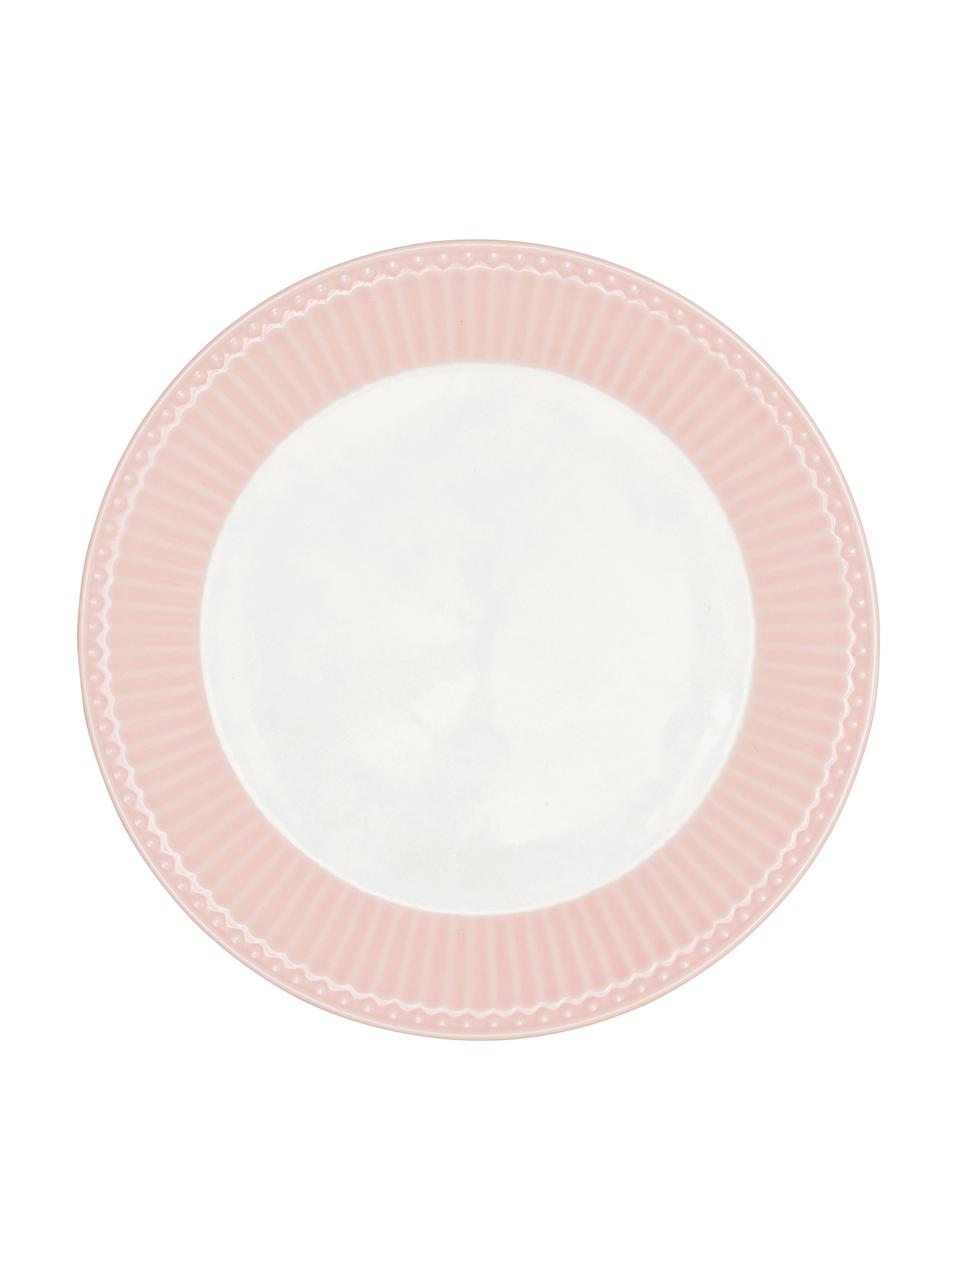 Handgemachte Frühstücksteller Alice in Rosa mit Reliefdesign, 2 Stück, Steingut, Rosa, Weiß, Ø 23 cm